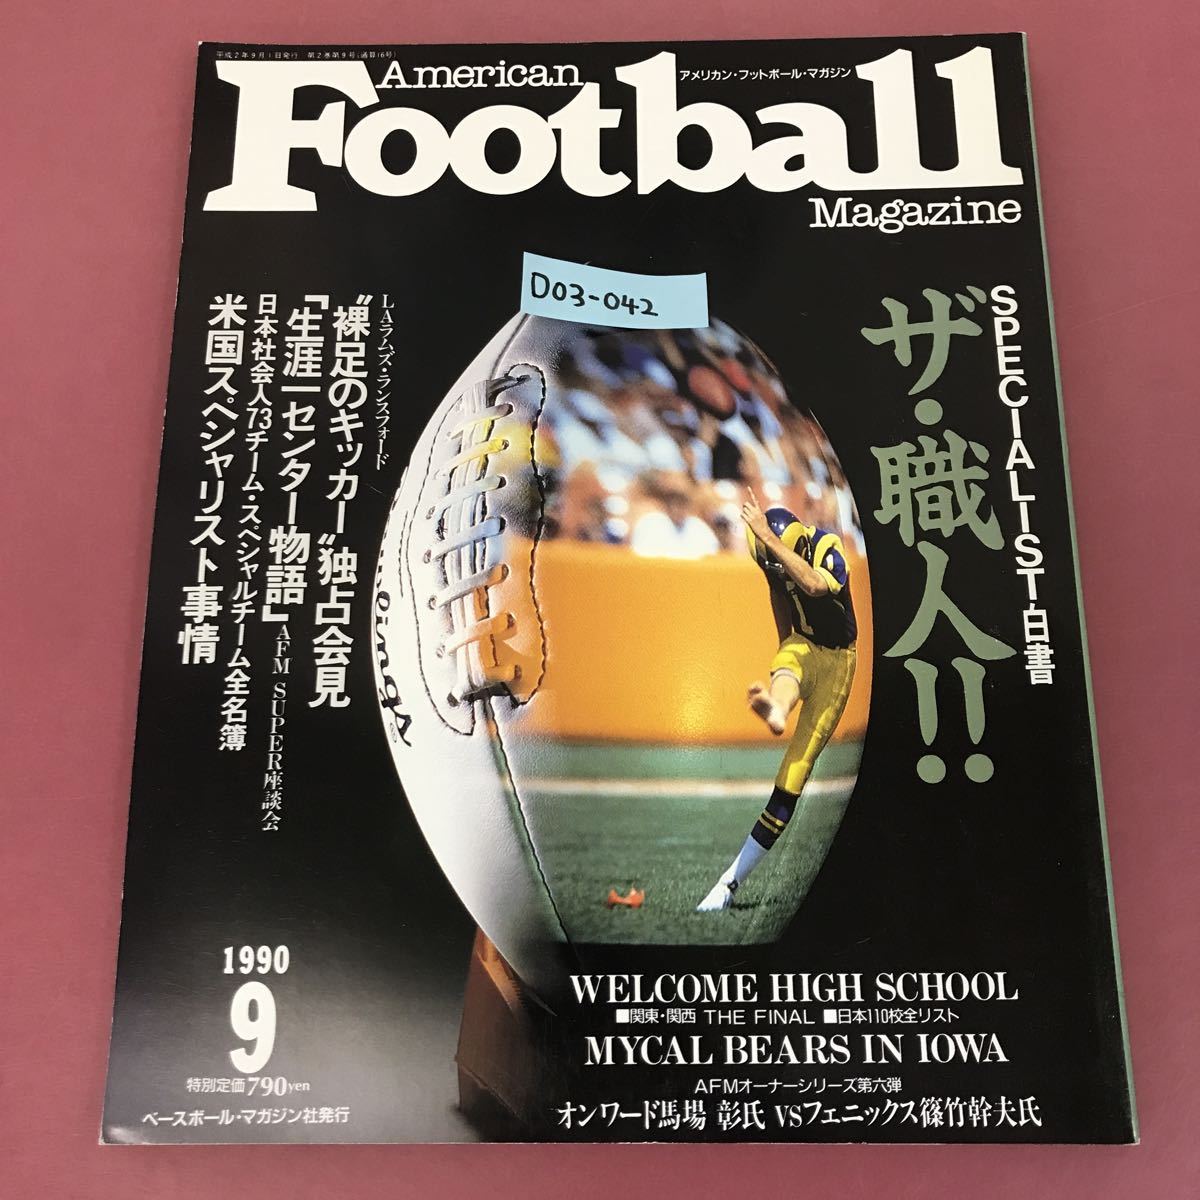 D03-042 September 1990 Vol.16 American Football Magazine ザ・職人 ベースボール・マガジン社 1990 9 アメリカンフットボールマガジン